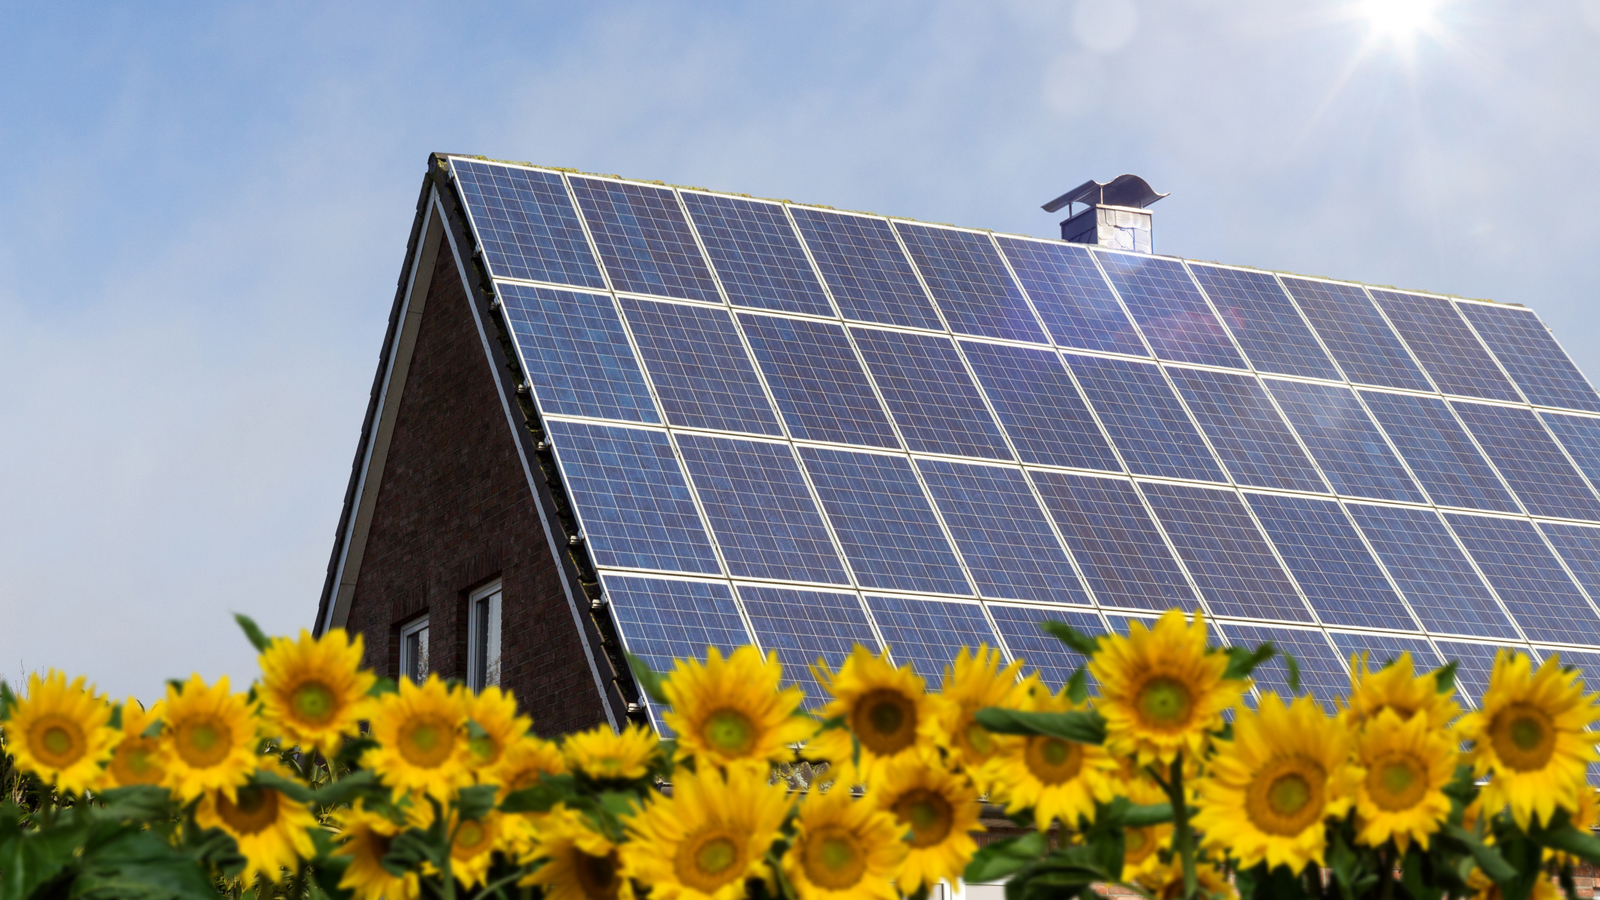 Haus mit einer Photovoltaik-Anlage in einem Feld mit Sonnenblumen.